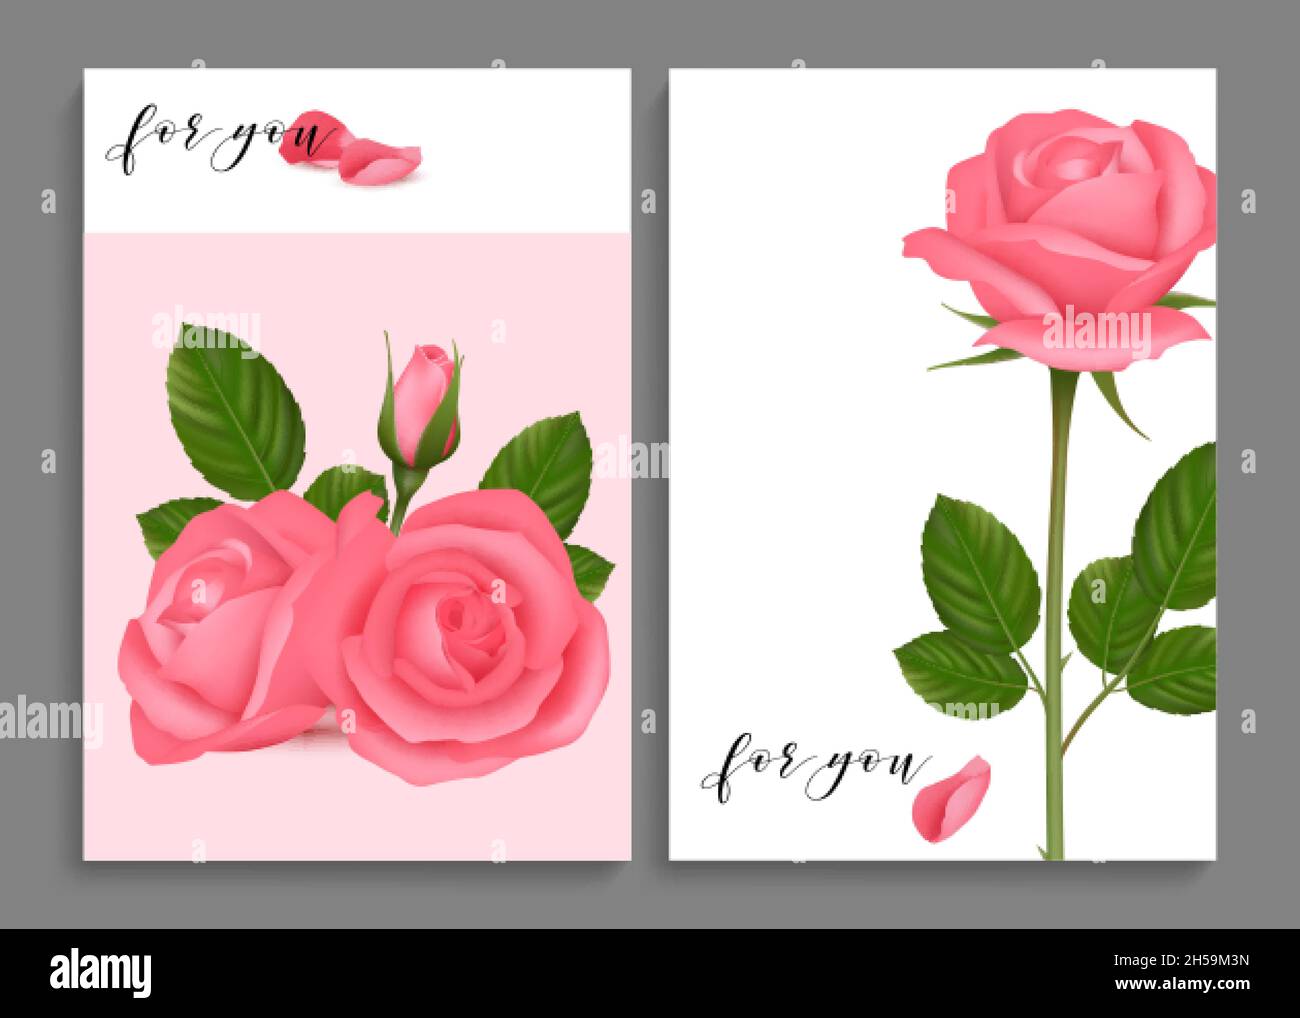 Cartoline di rose. Carte di rose realistiche, striscioni romantiche amore. Per voi simpatici modelli vettoriali di fiori Illustrazione Vettoriale